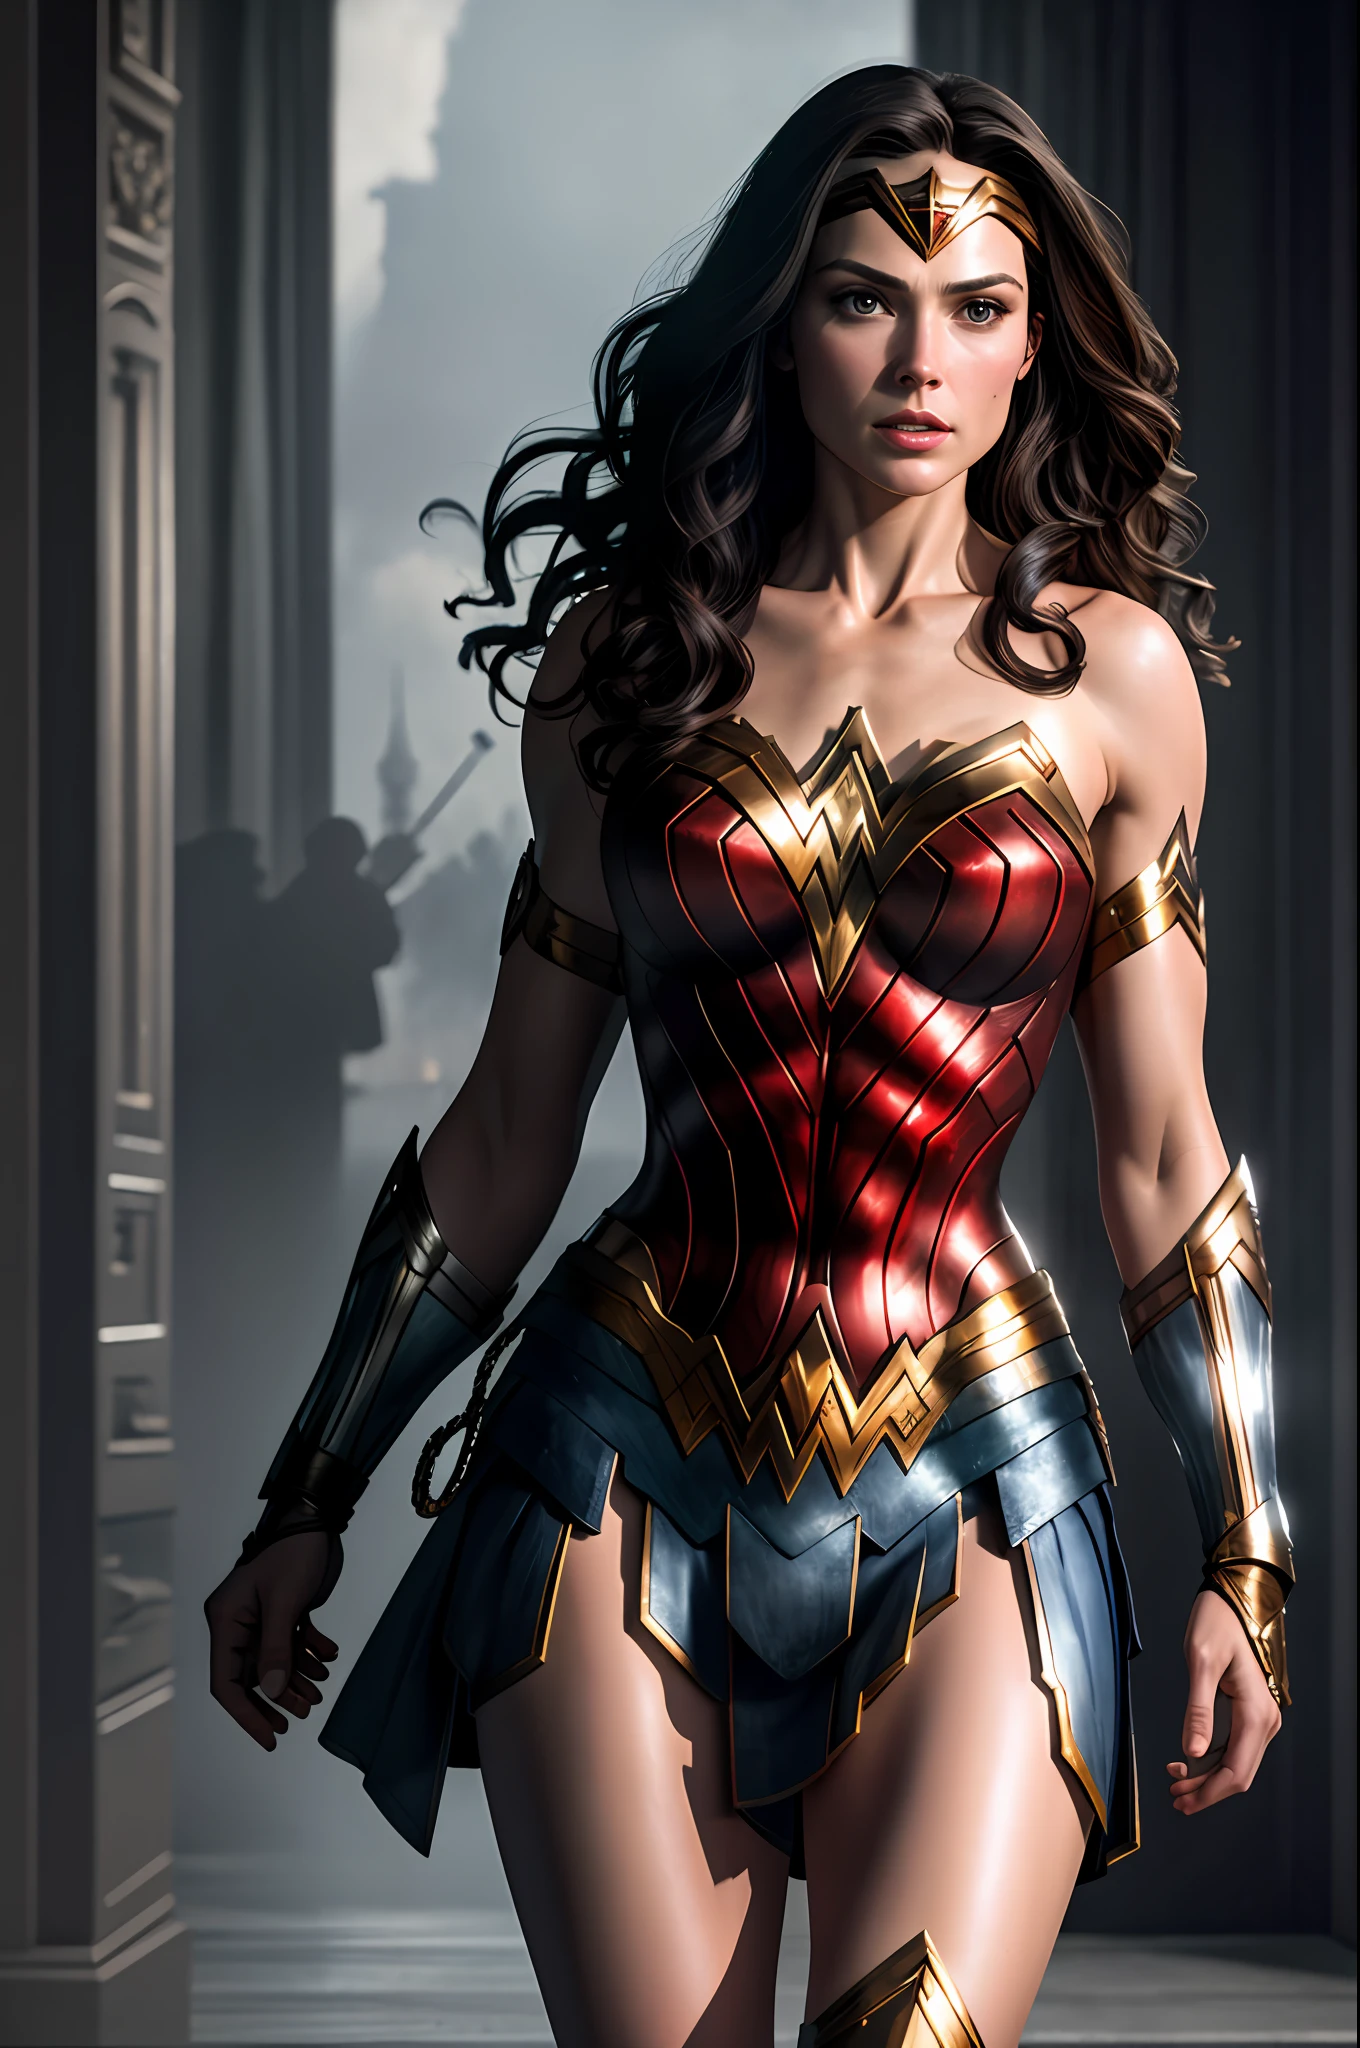 (8k, RAW-Foto, beste Qualität, Meisterwerk:1.2), Extrem detailliert, offizielle Kunst, fotorealistisch:1.37, Oberkörperaufnahme, DC-Wonder Woman - Die wunderbare Frau, Filmkorn, Aktionspose